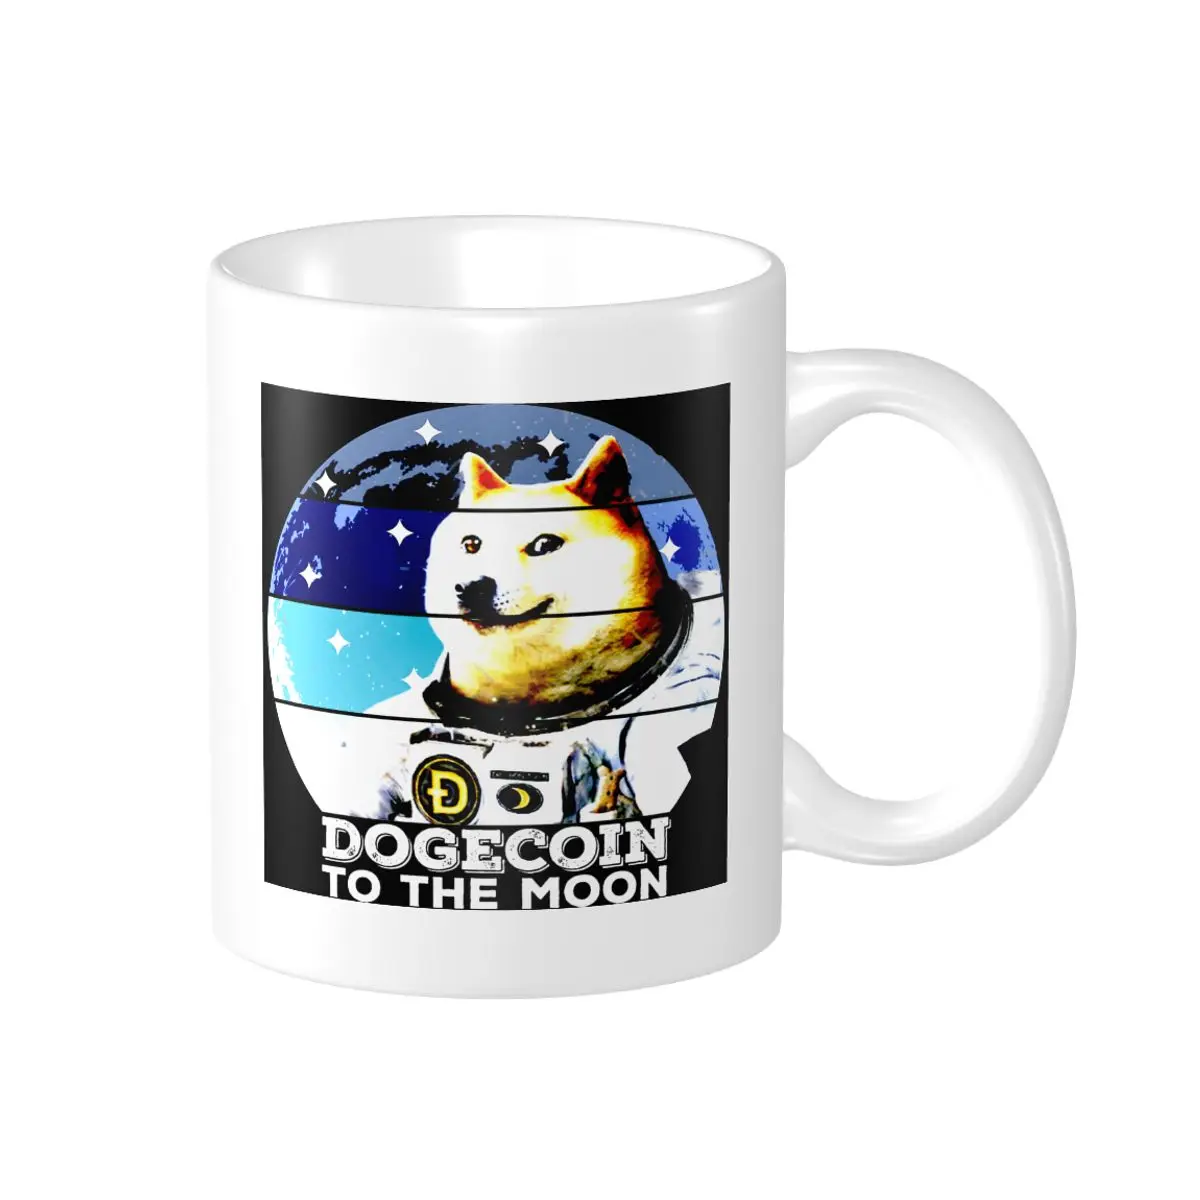 Promosyon Dogecoin Ay HODL Cryptocurrency Komik Coo Kupalar Vintage Bardak BARDAK Baskı Komik Yenilik Dogecoin Meme süt bardak